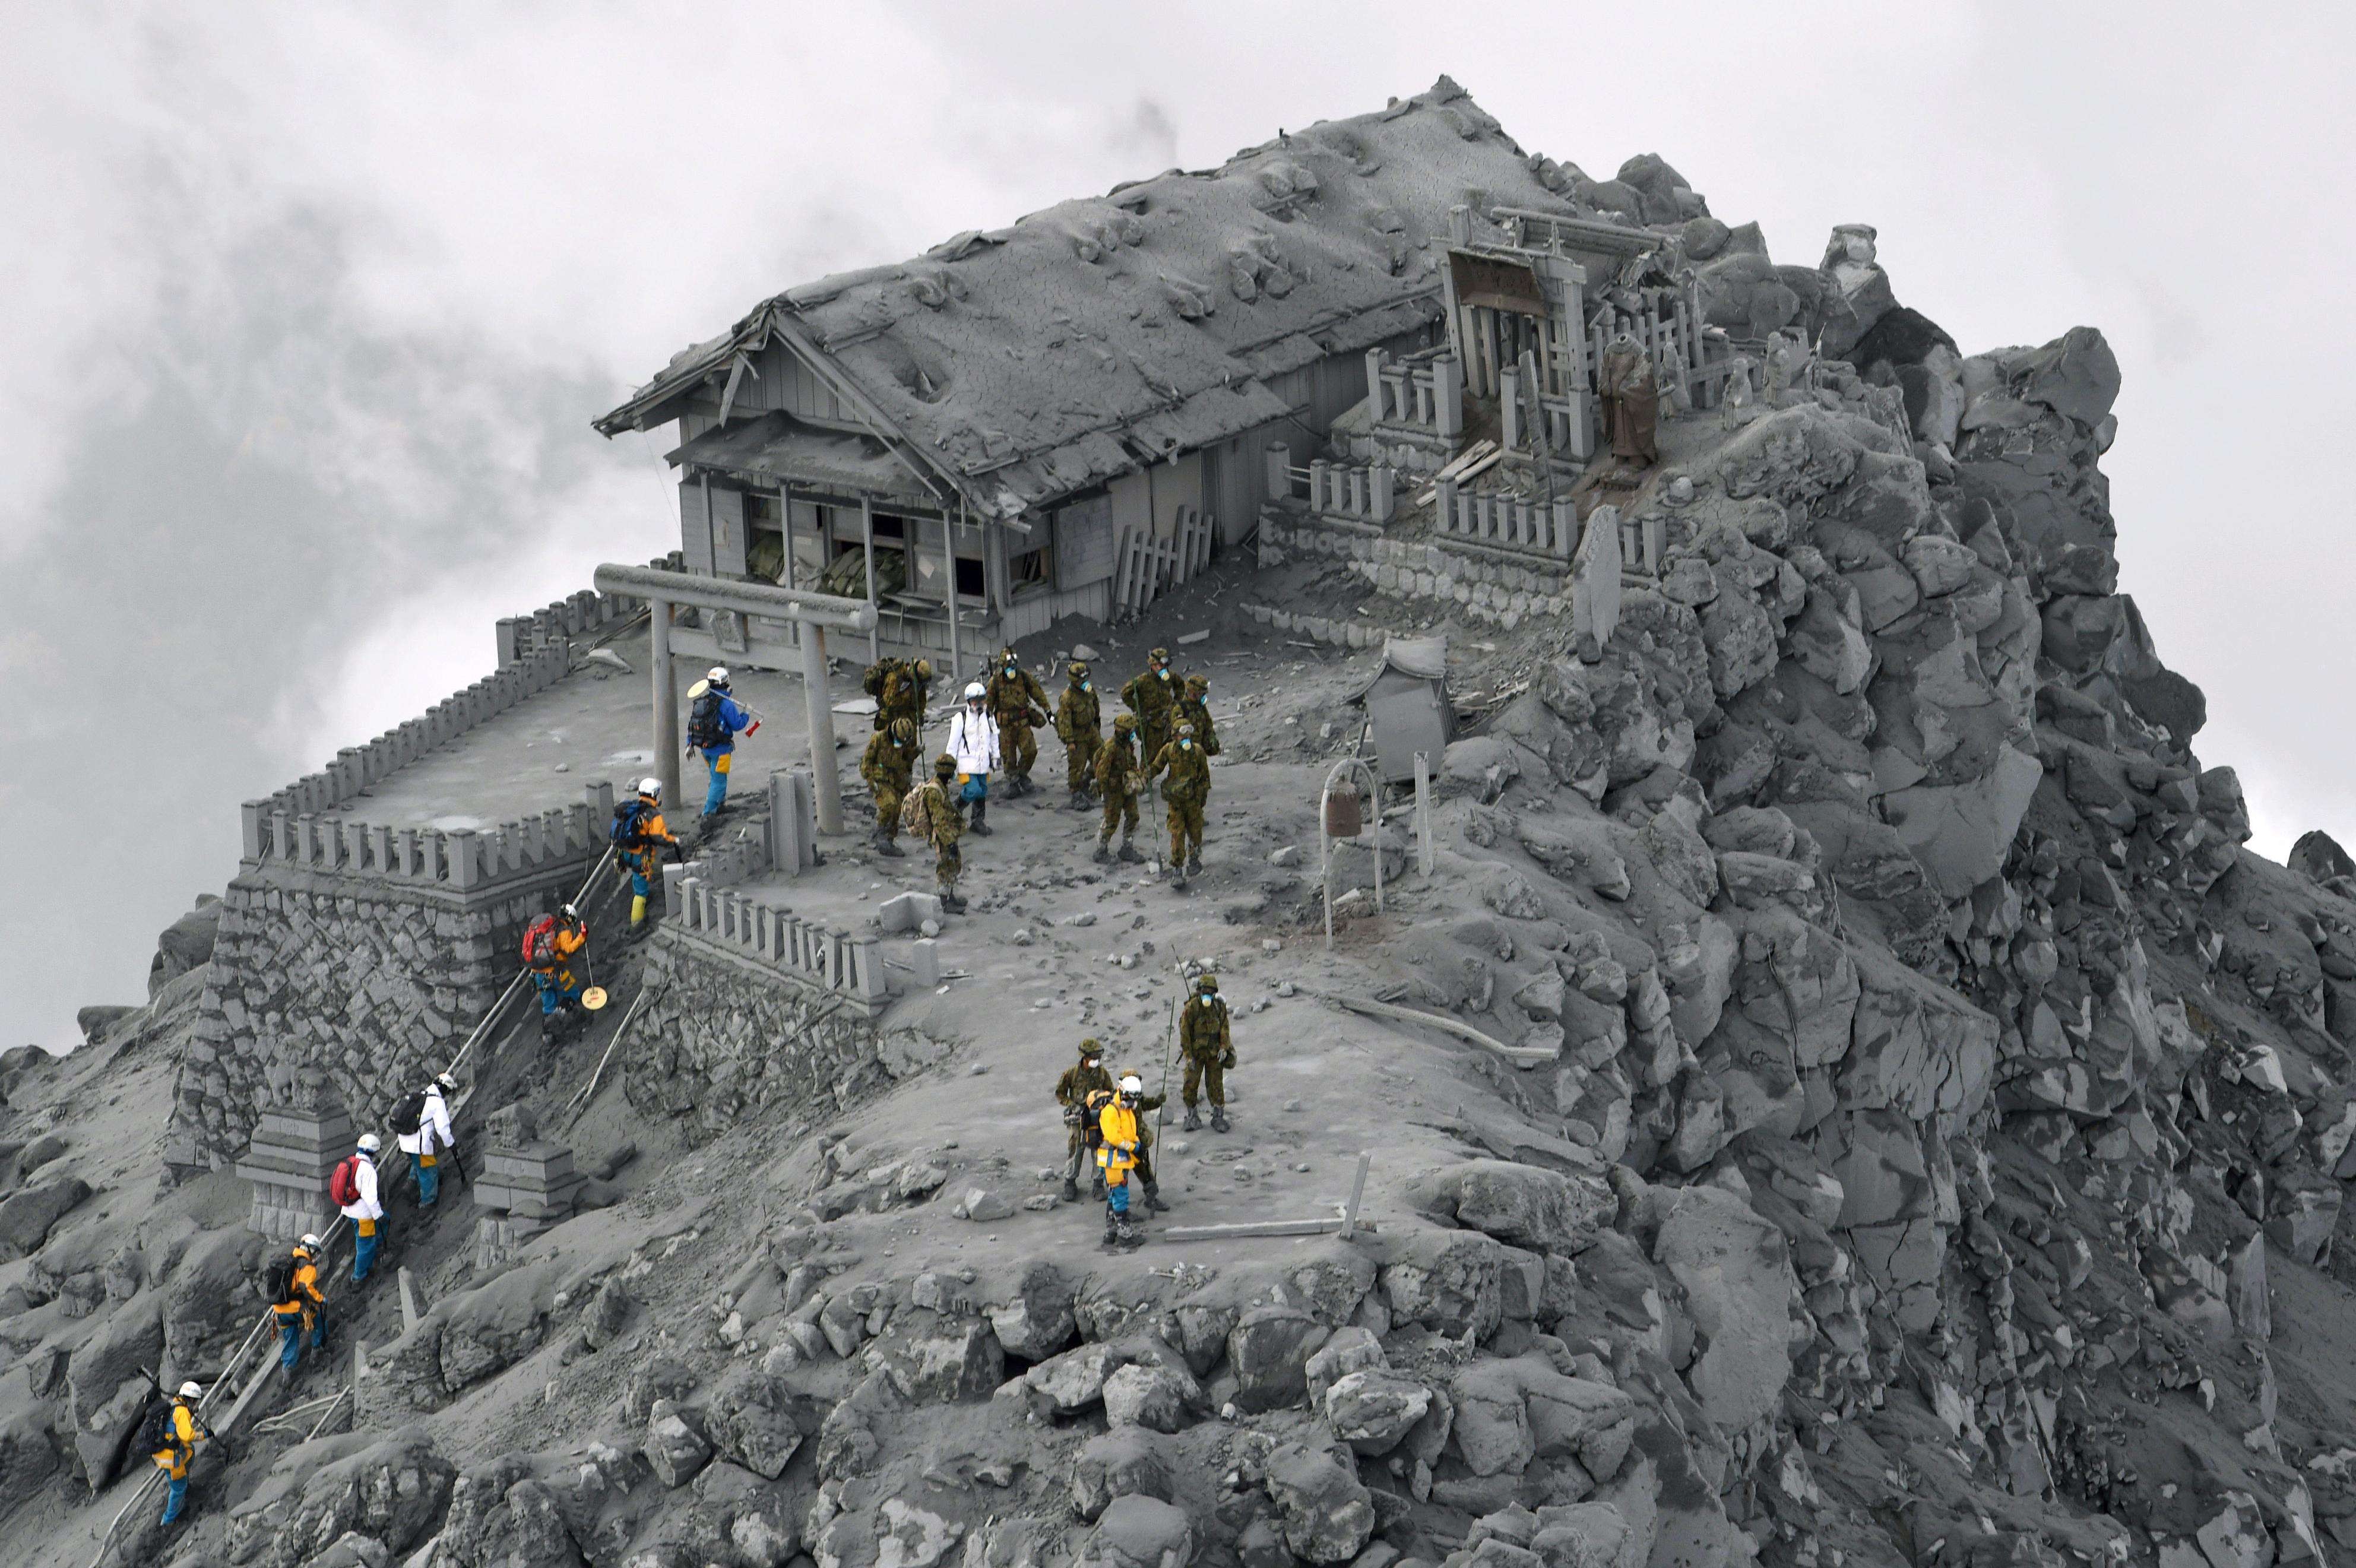 Покрытый пеплом после извержения вулкана Храм Онтаке. Автор неизвестен